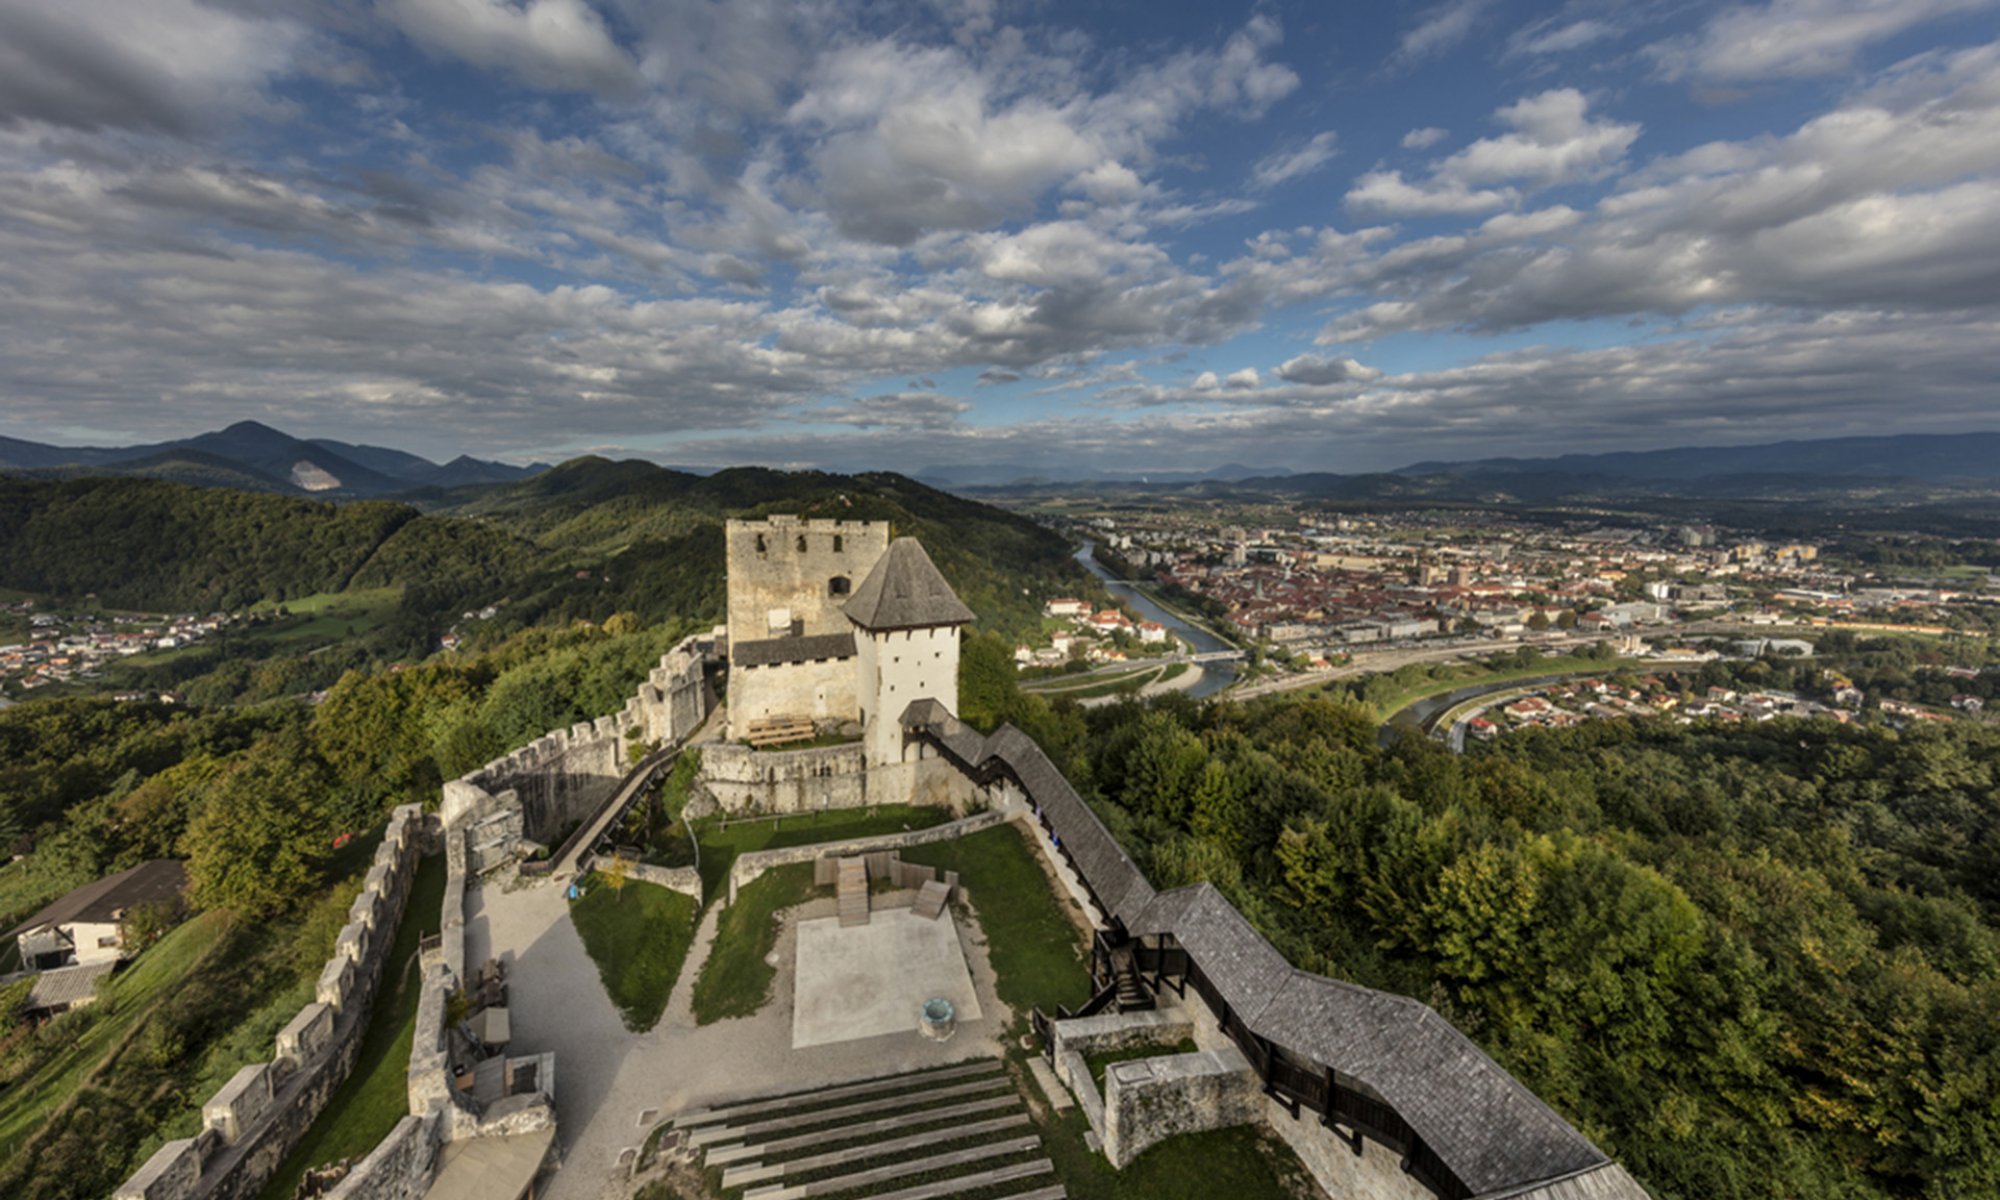 V pisnih virih je mogočni Stari grad v Celju prvič omenjen leta 1323, njegova zgodovina pa je še 200 let starejša. Današnjo podobo je dobil, ko so ga prevzeli grofje Celjski, najbolj znana in najpomembnejša vladarska rodbina na slovenskem ozemlju.